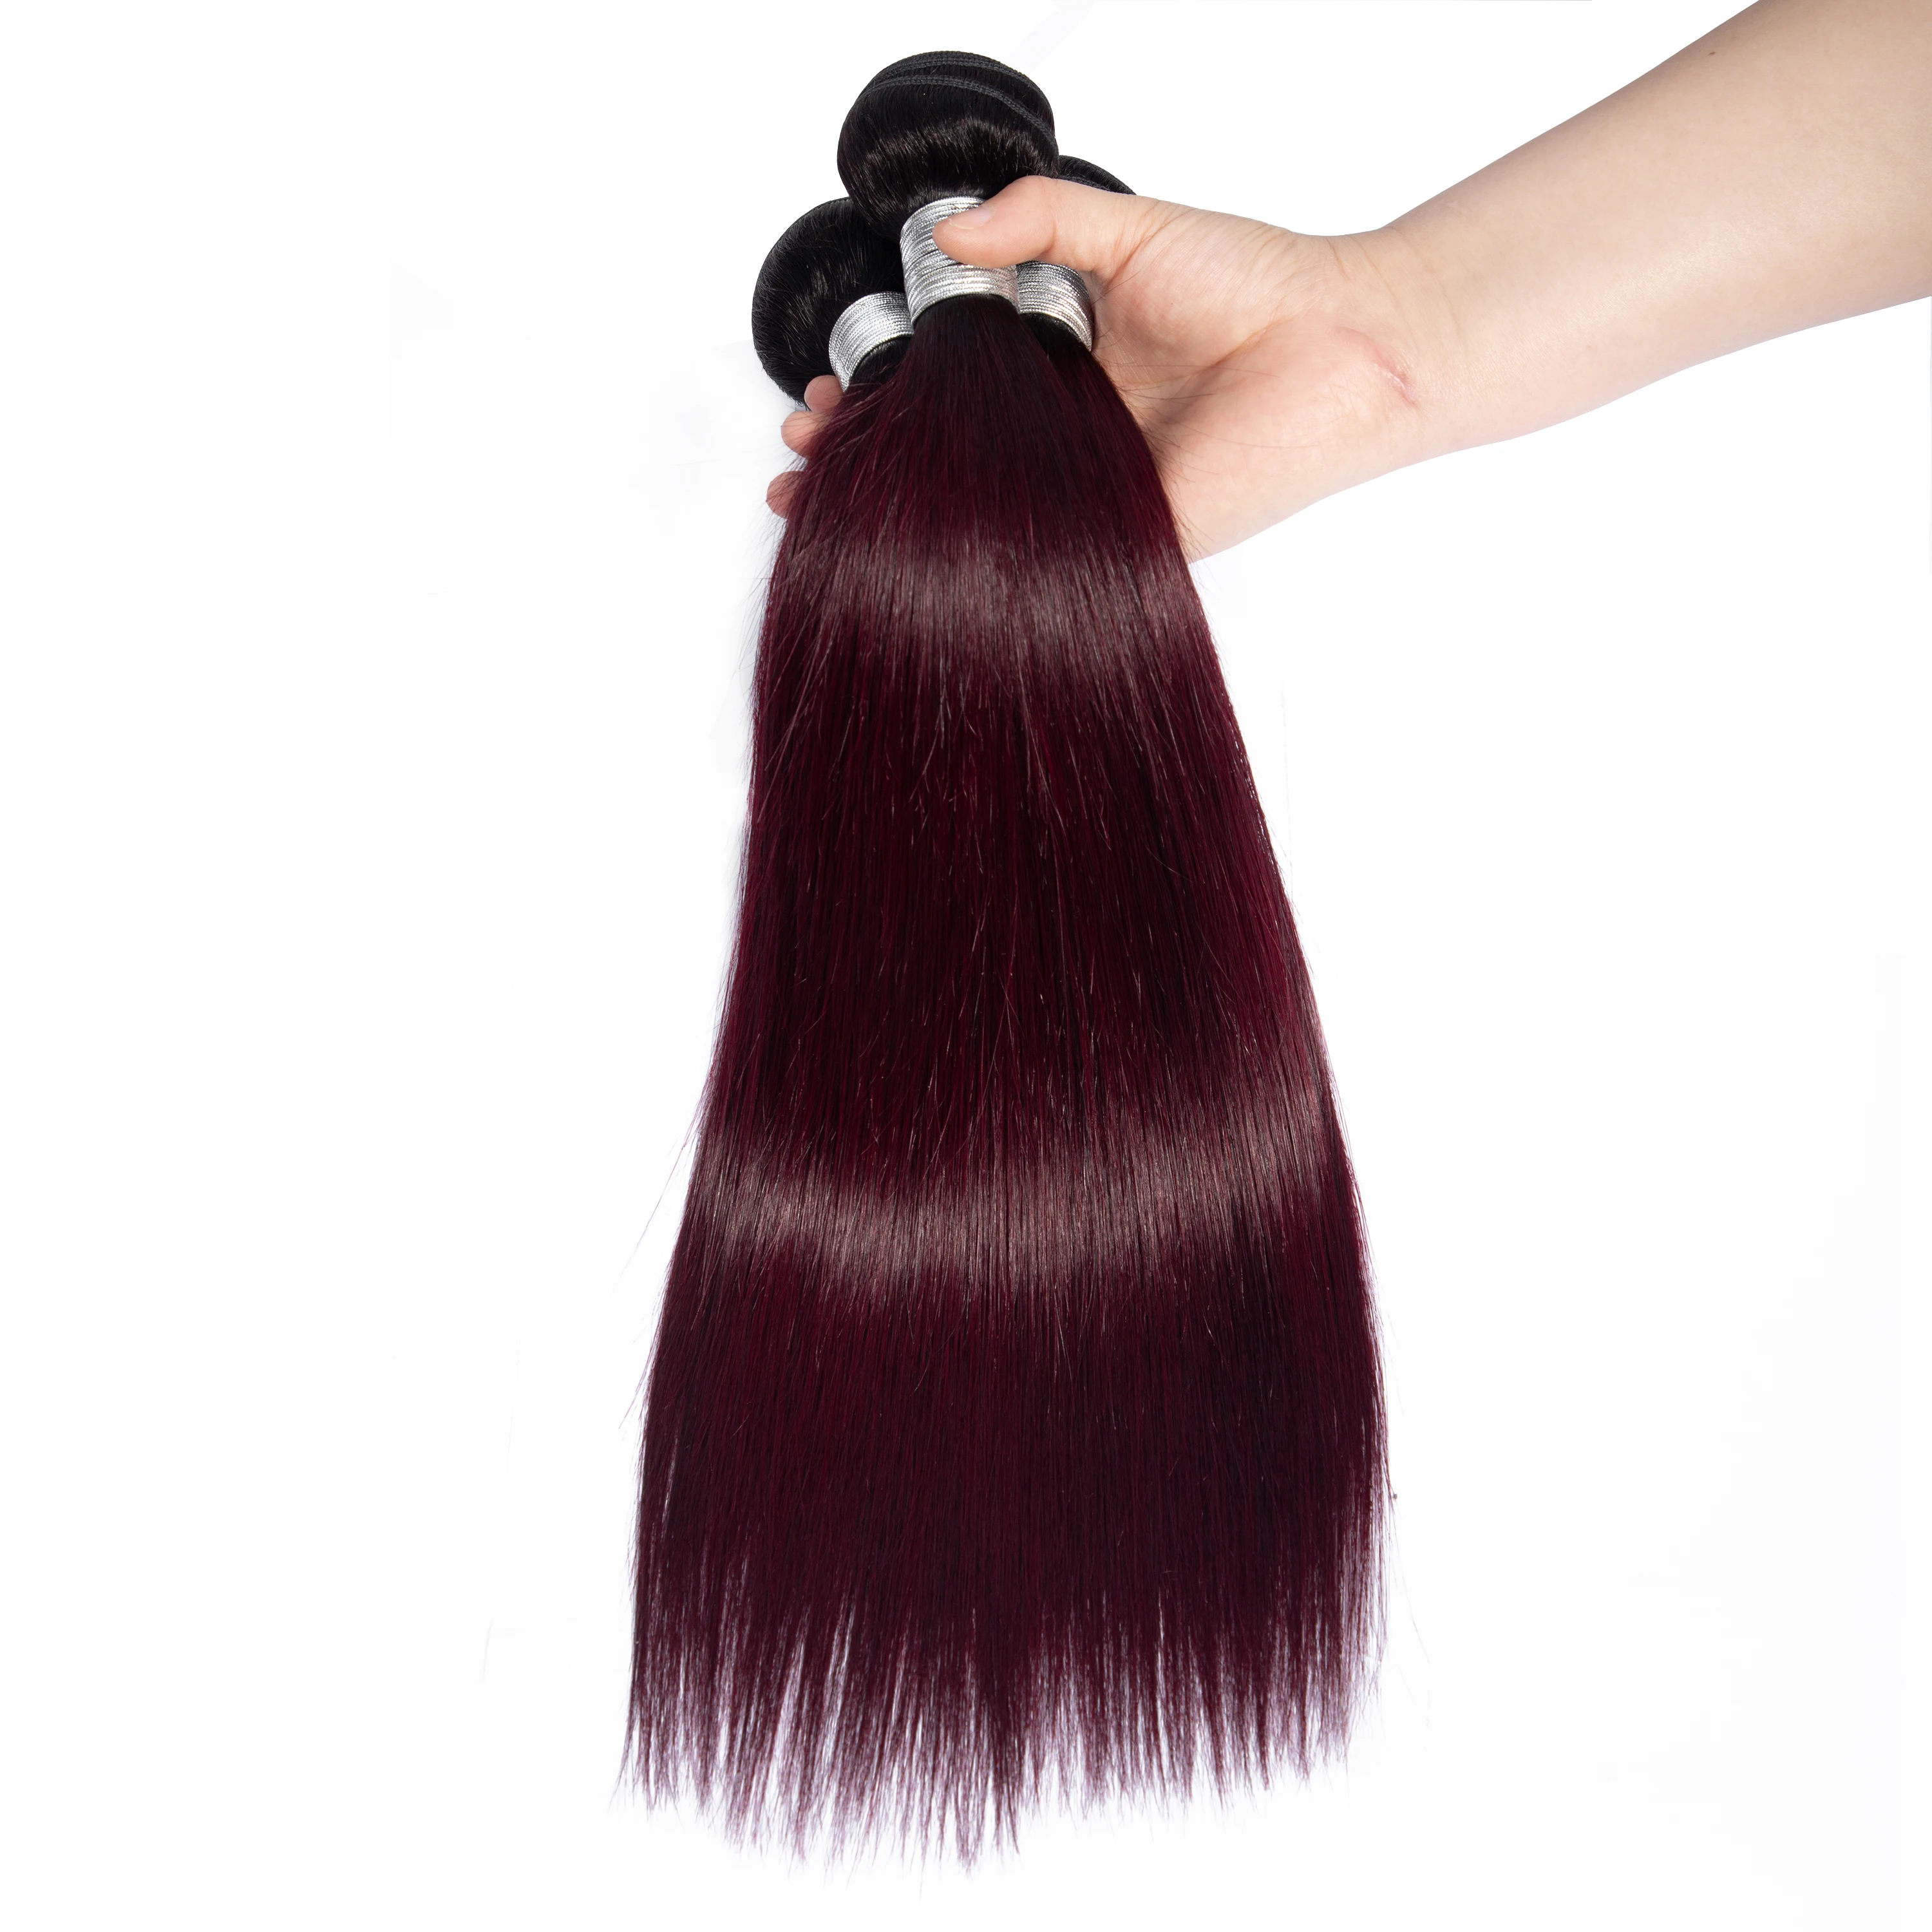 Funky Girl бразильские прямые волосы переплетения пучки не-remy наращивание волос T1B/30 T1B/бордовый Омбре человеческие волосы пучки 10-26 дюймов